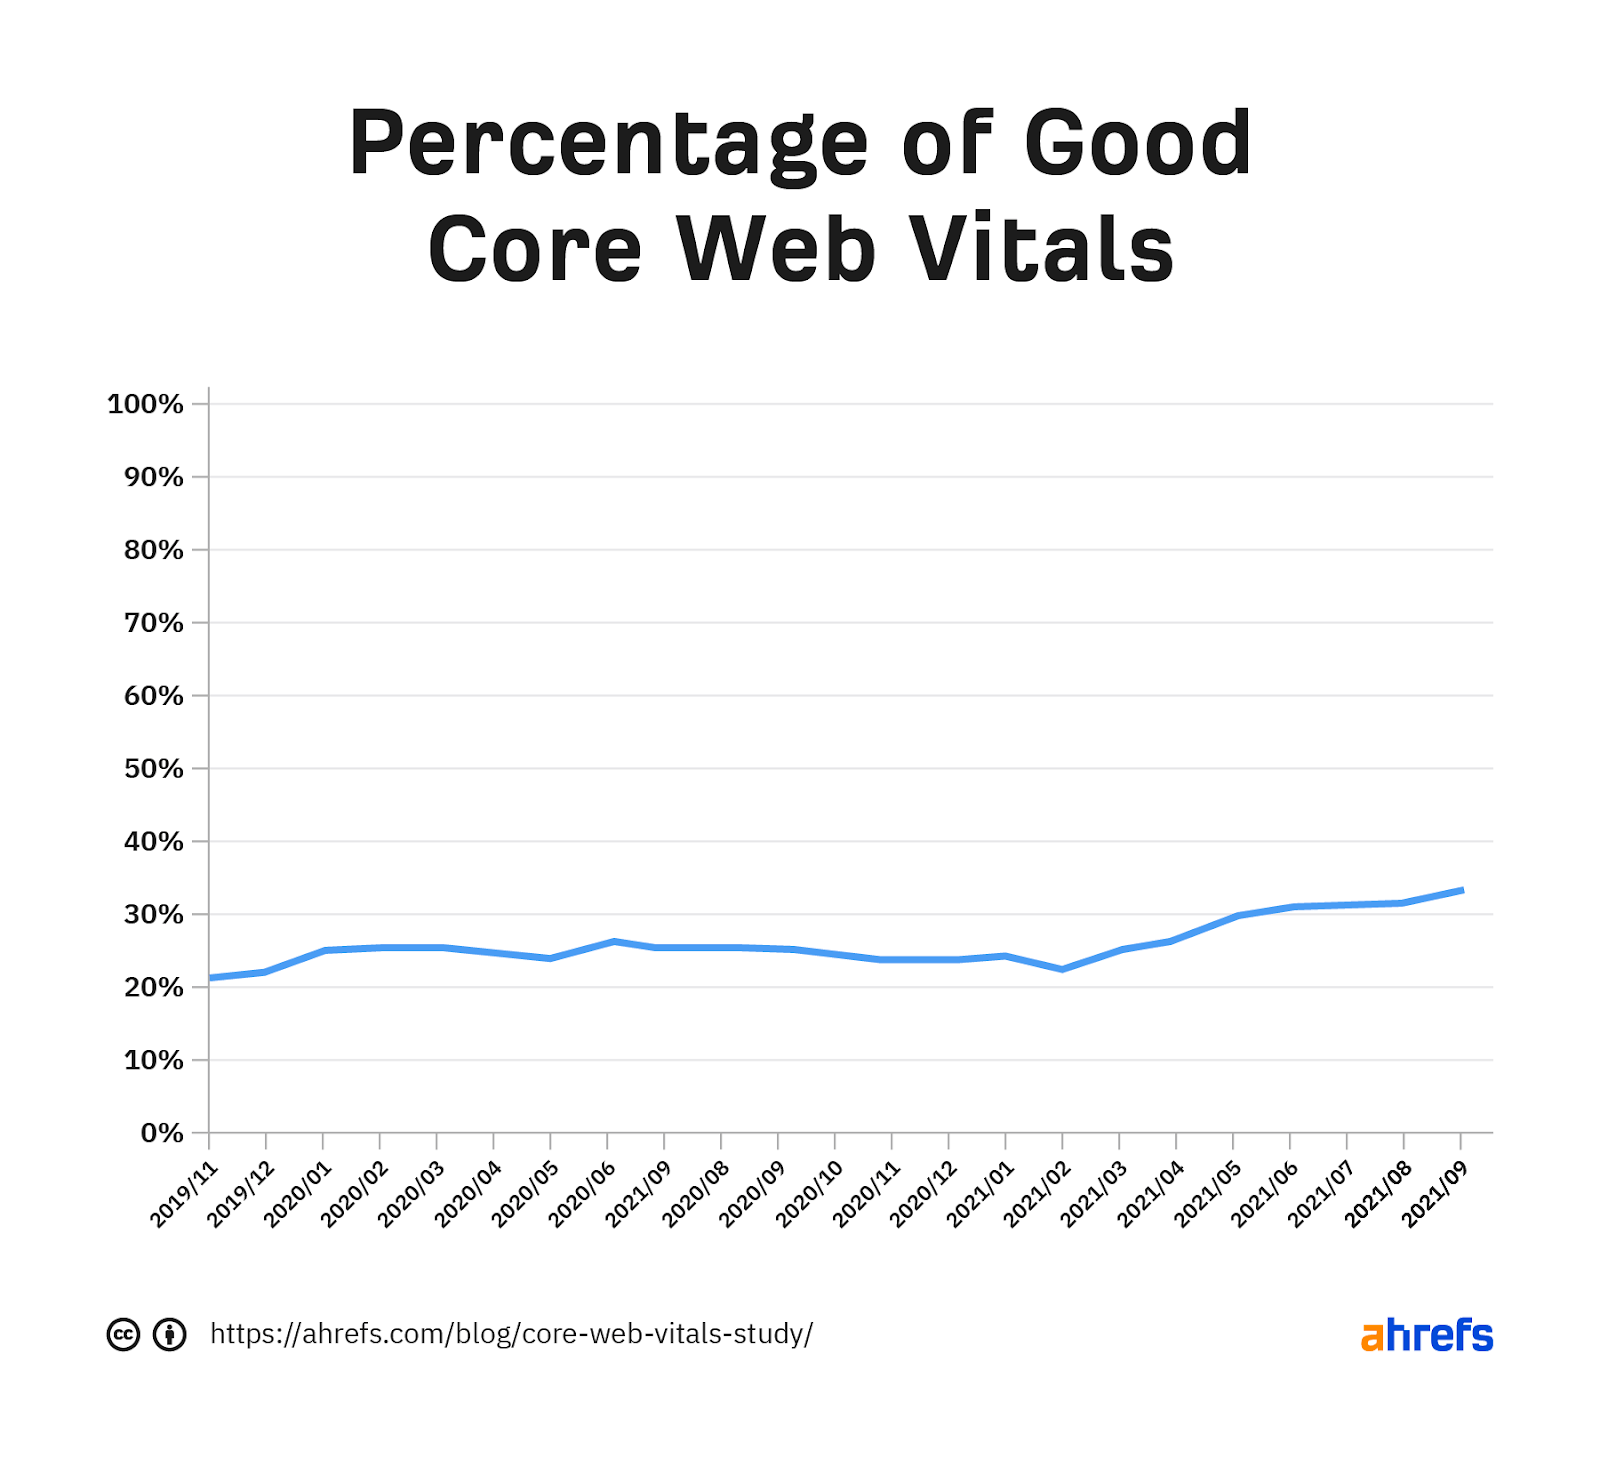 Gráfico que muestra el porcentaje de buenas métricas web clave a lo largo del tiempo